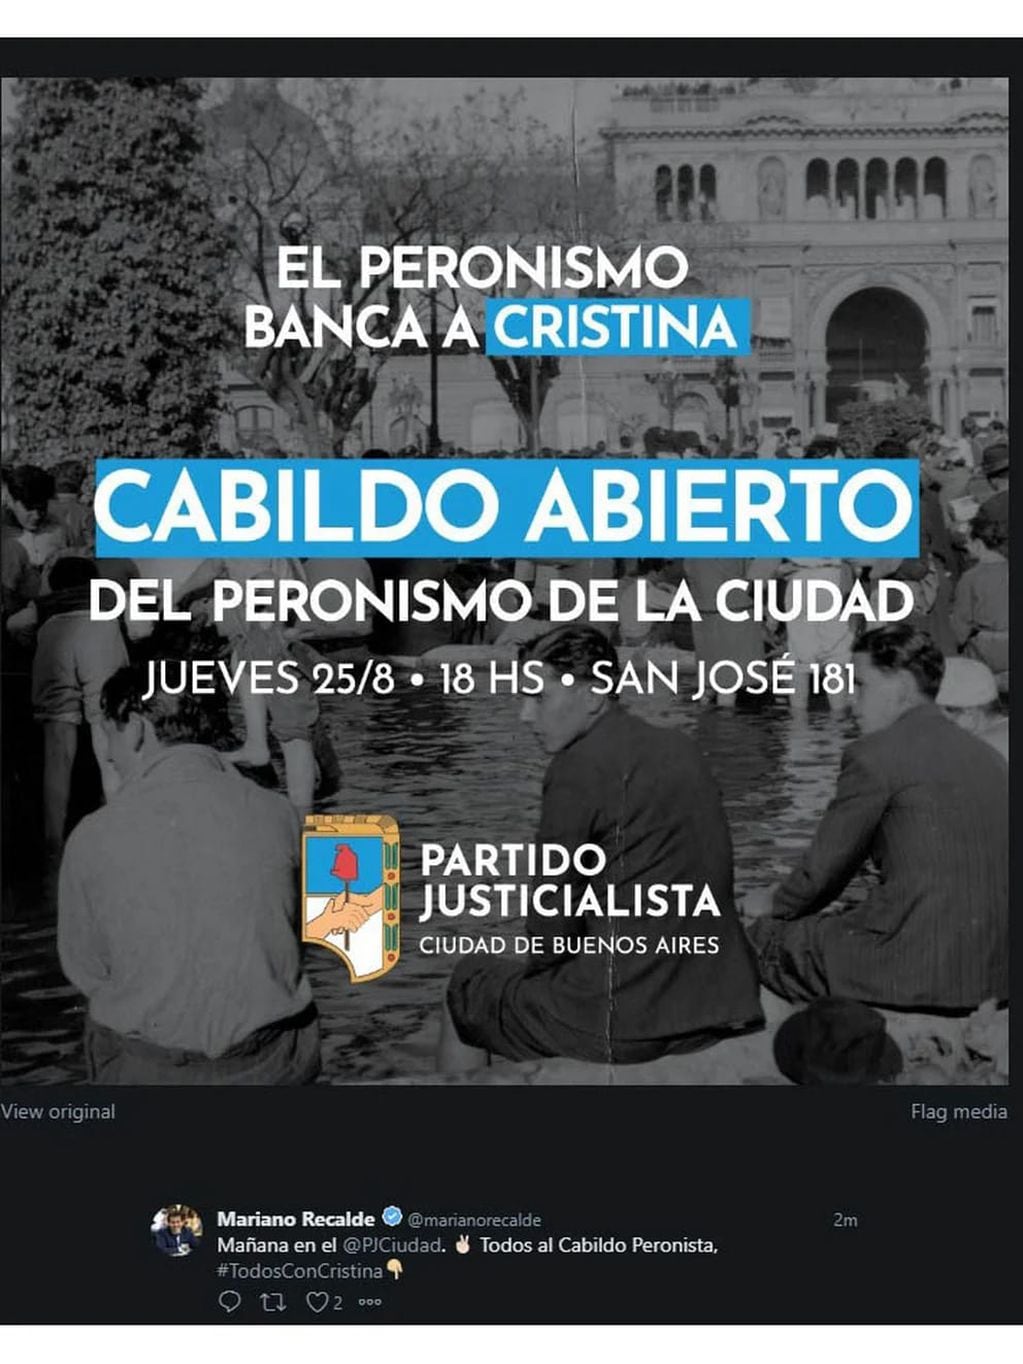 La convocatoria para el "Cabildo Abierto" en apoyo de Cristina Kirchner.